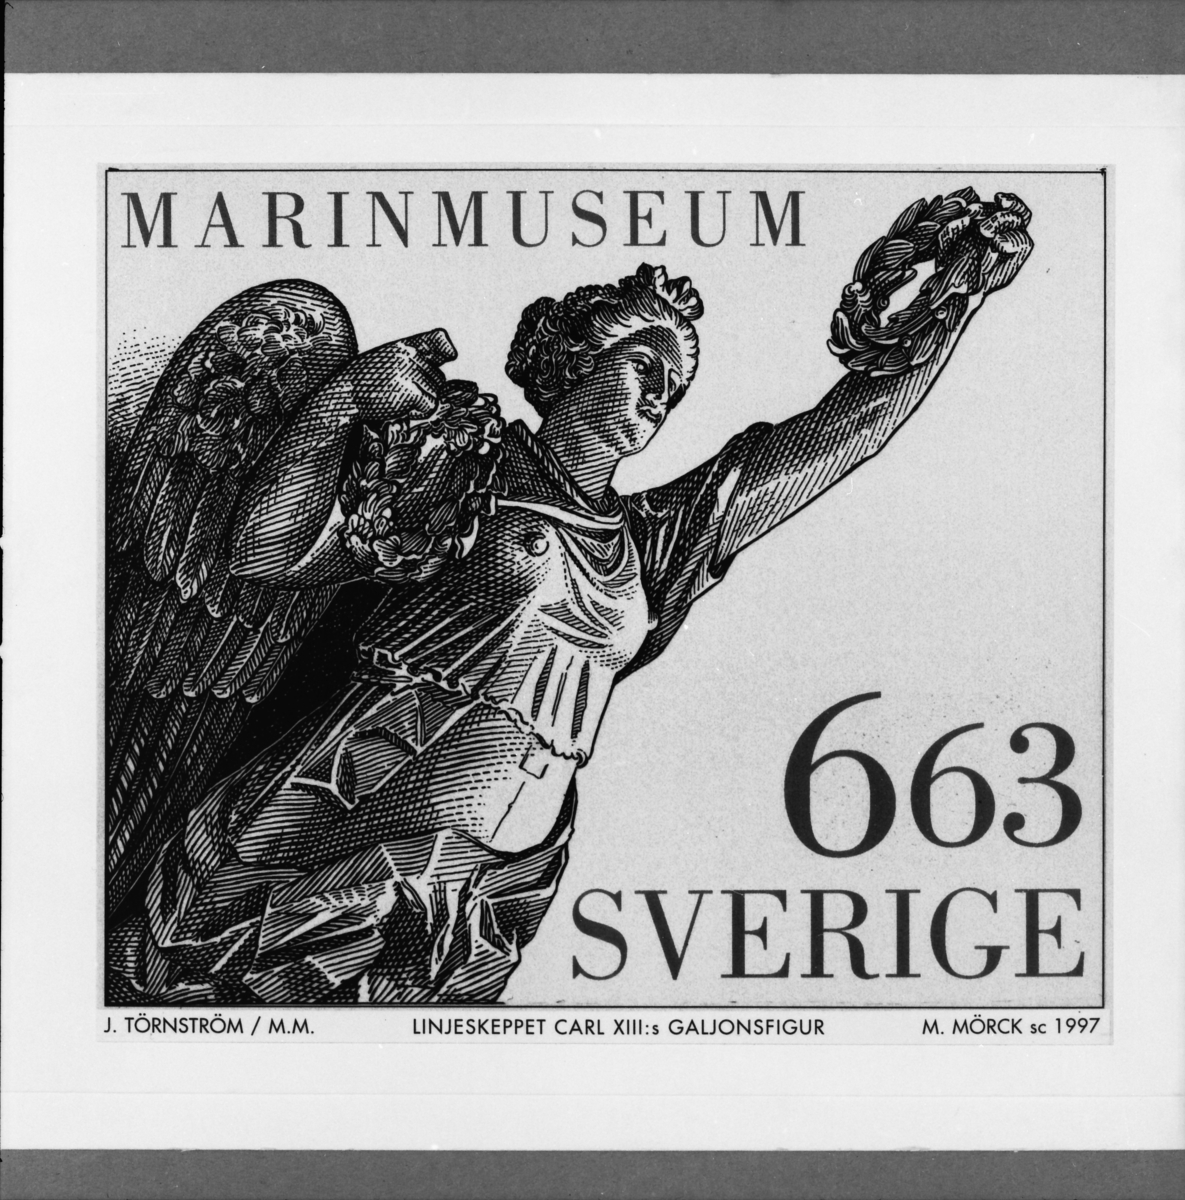 Originalteckning till frimärket "Galjonsfigur från linjeskeppet Carl XIII", 1700-tal för frimärksutgåvan Marina motiv, 1997.